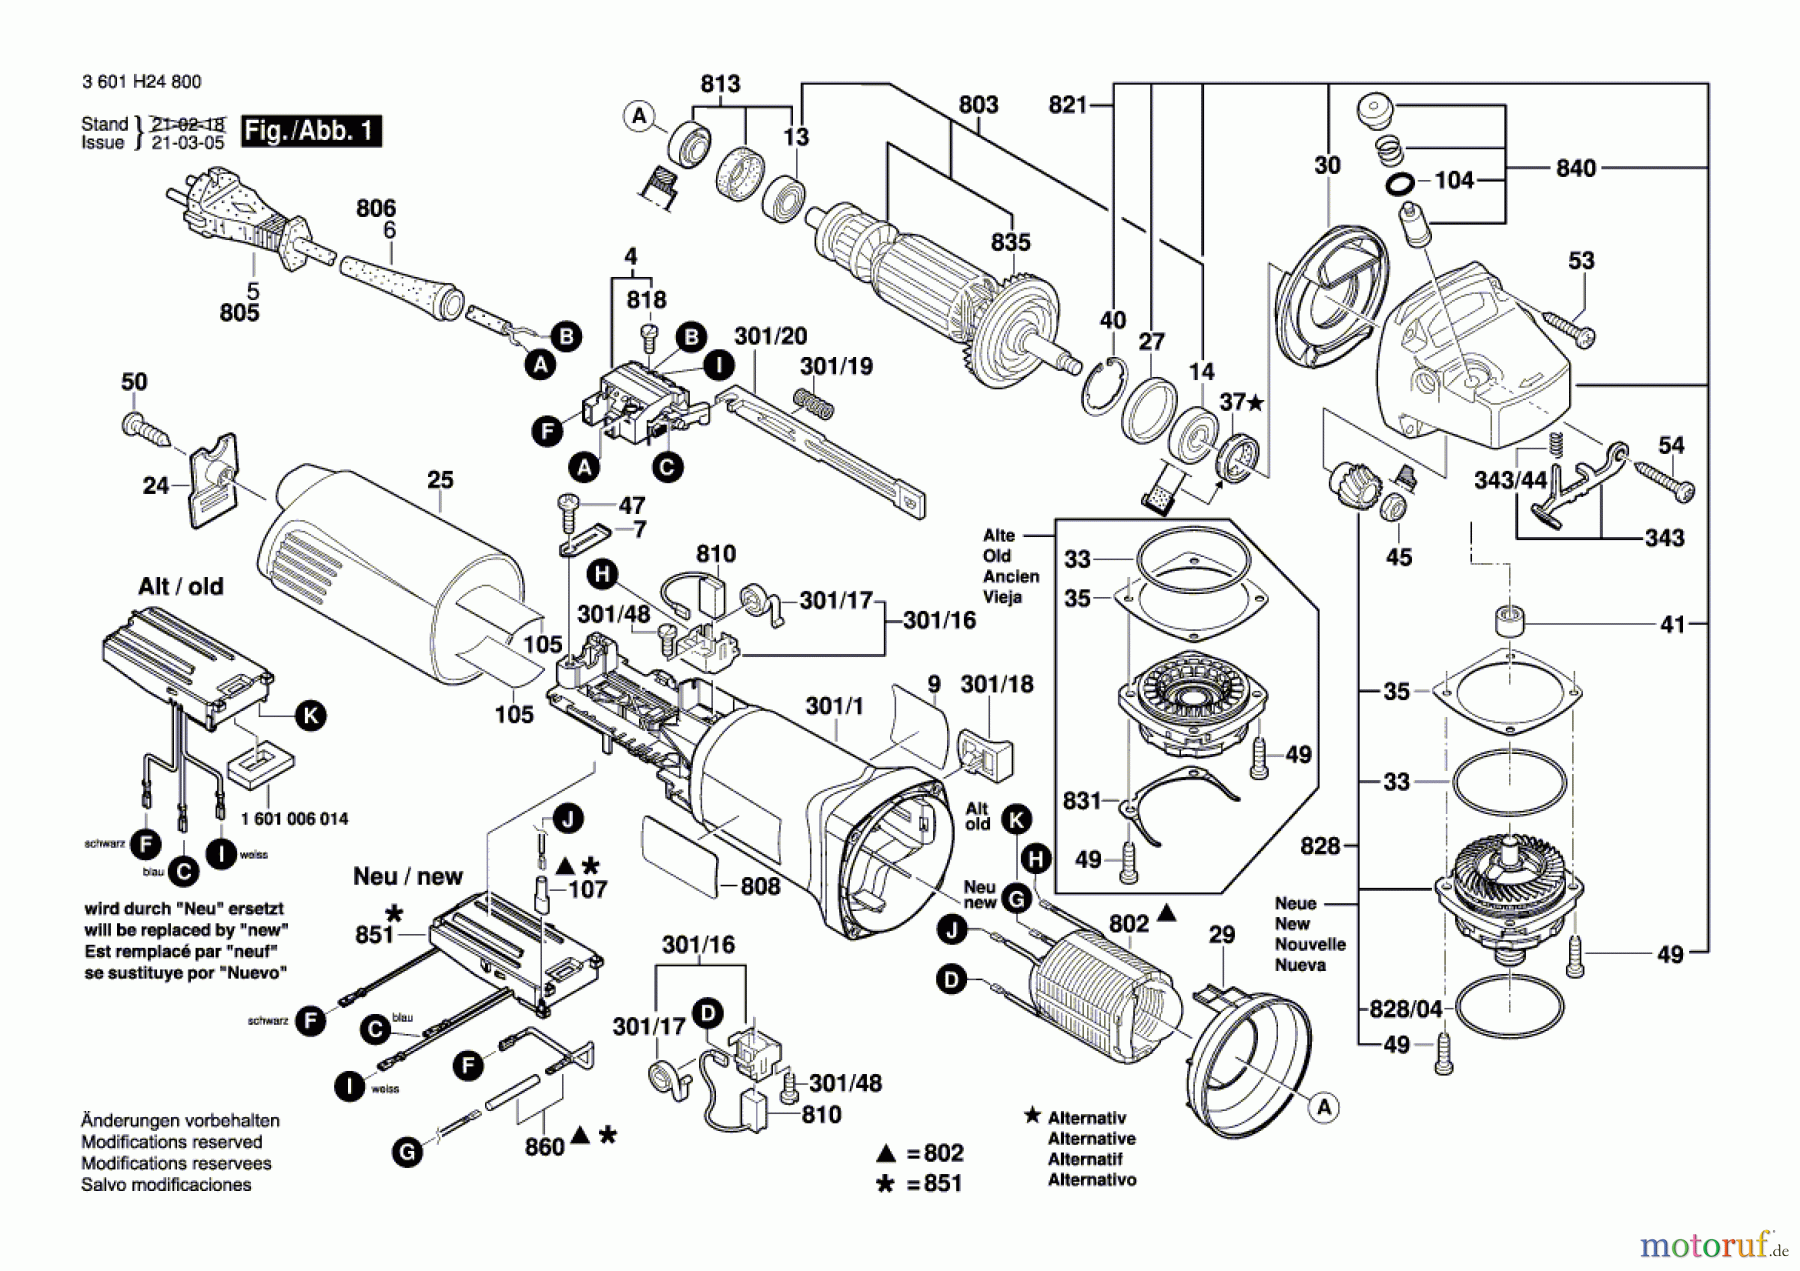  Bosch Werkzeug Winkelschleifer GWS 14-125 Seite 1